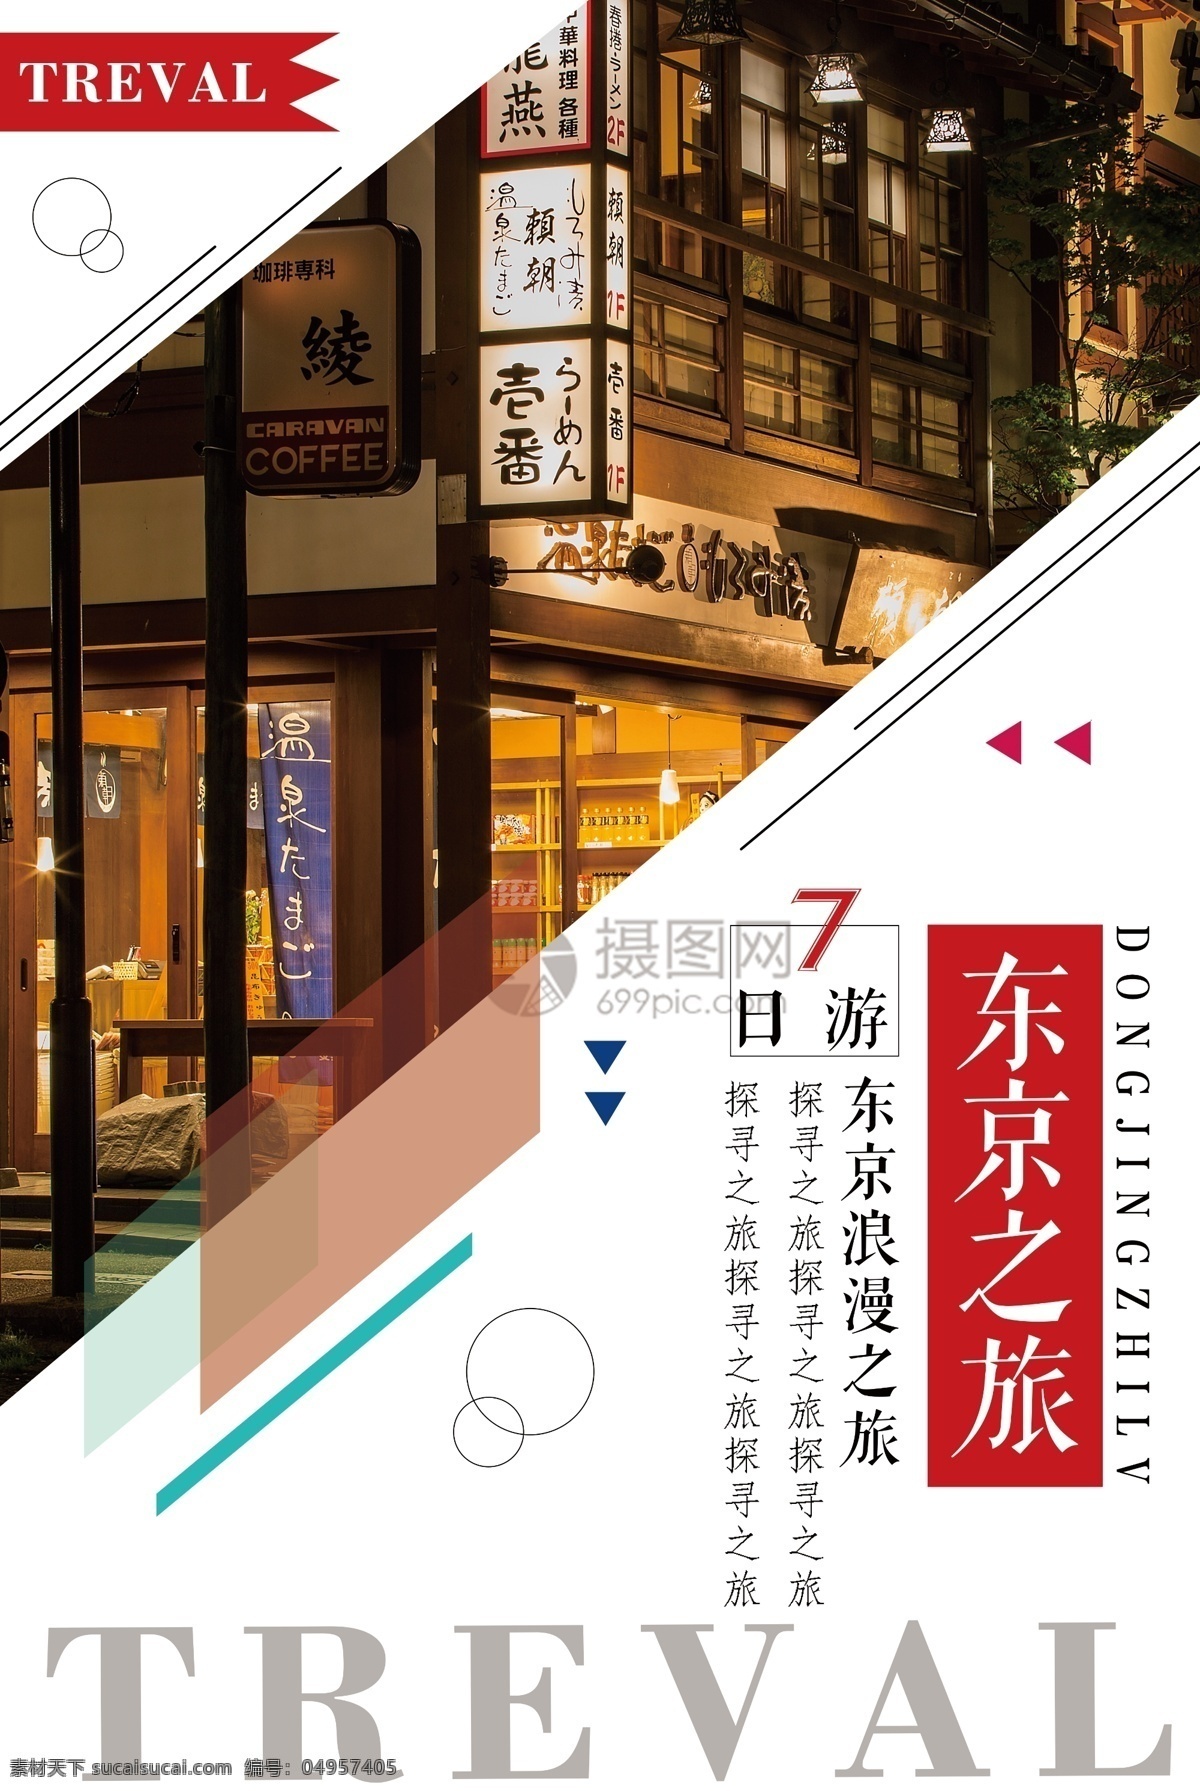 东京旅游海报 东京 日本 海报 旅游 旅行 旅行社 旅行团 跟团游 旅游海报 国外游 出境游